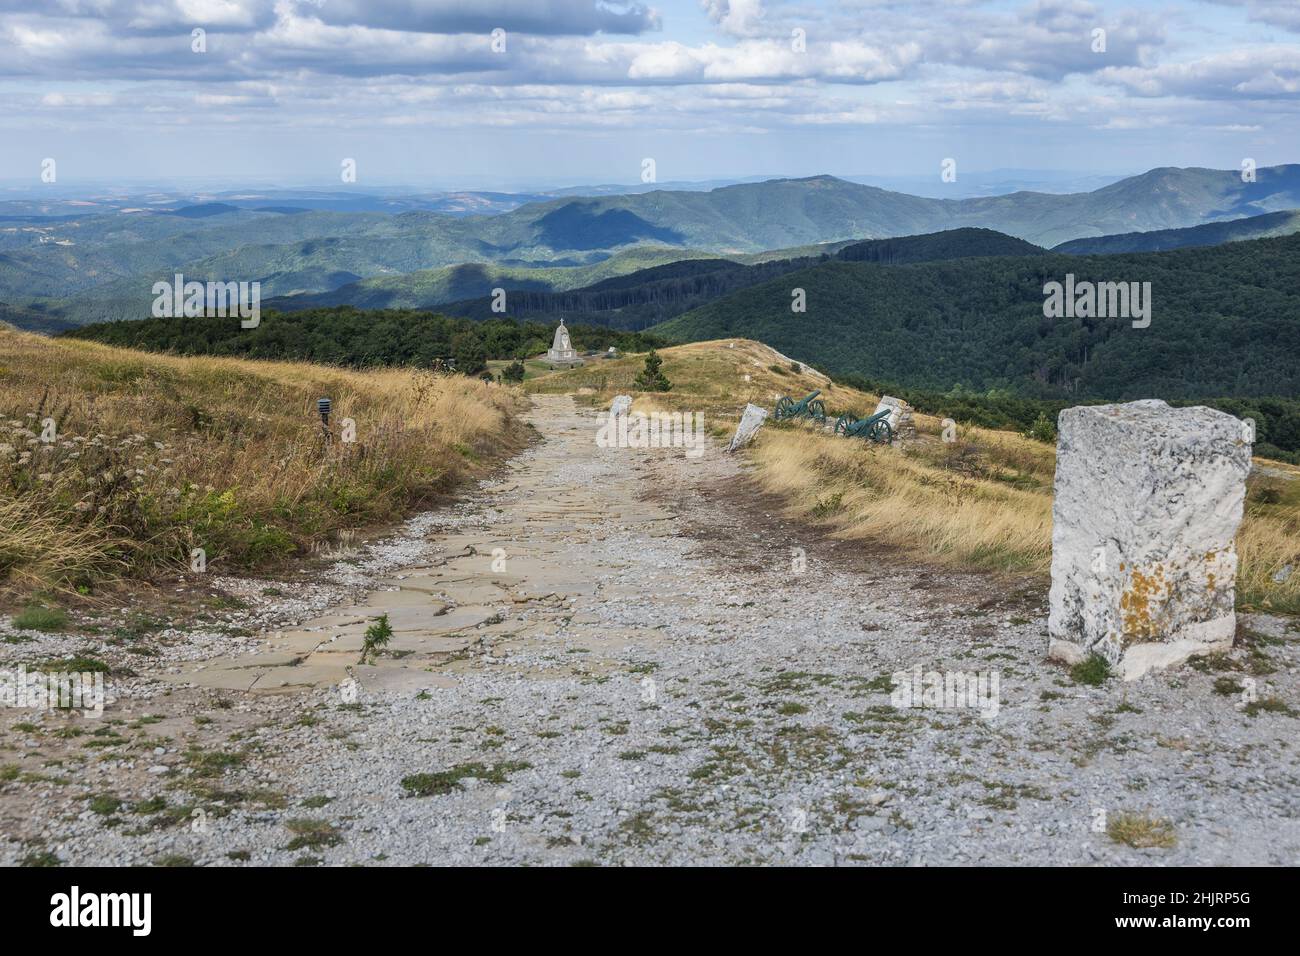 Monumento al Alessandro II di Russia, lo zar russo chiamato Alessandro il Liberatore sul Passo Shipka nella catena montuosa dei Balcani, Bulgaria Foto Stock